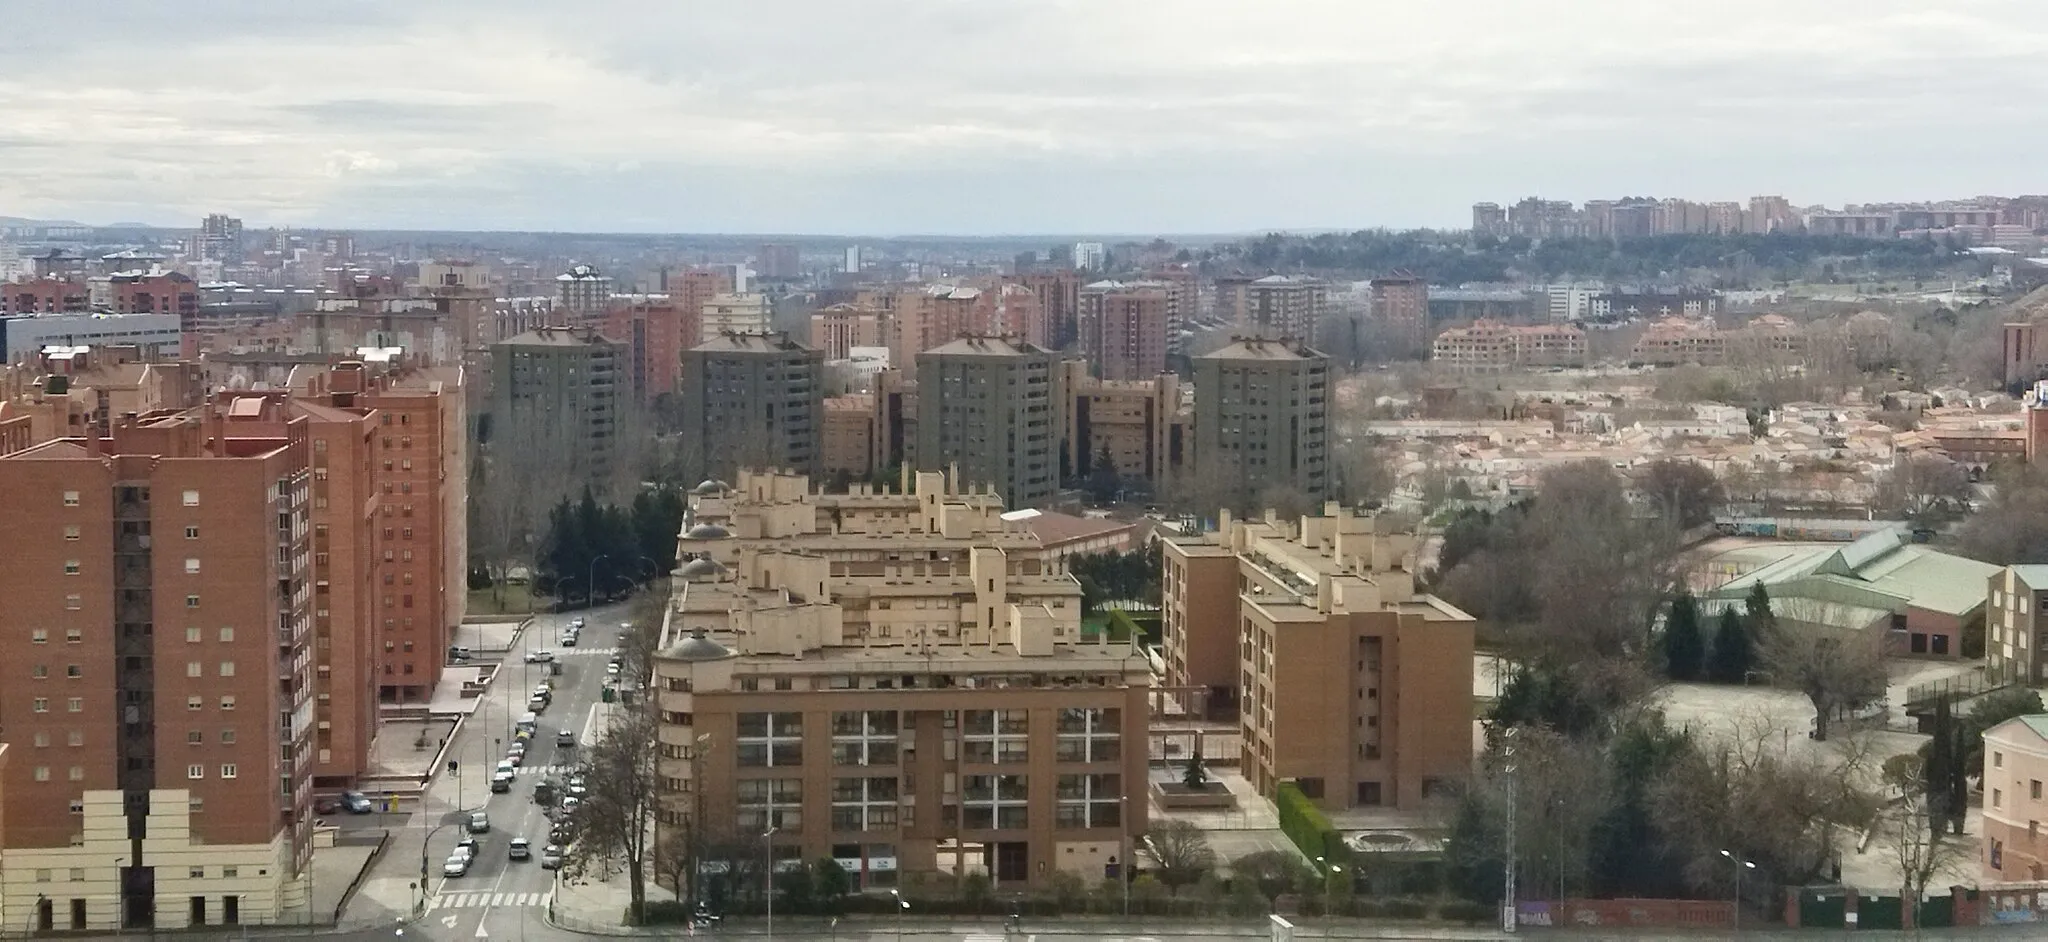 Photo showing: Vista panorámica de la ciudad de Valladolid, España, desde el Parque Fuente El Sol